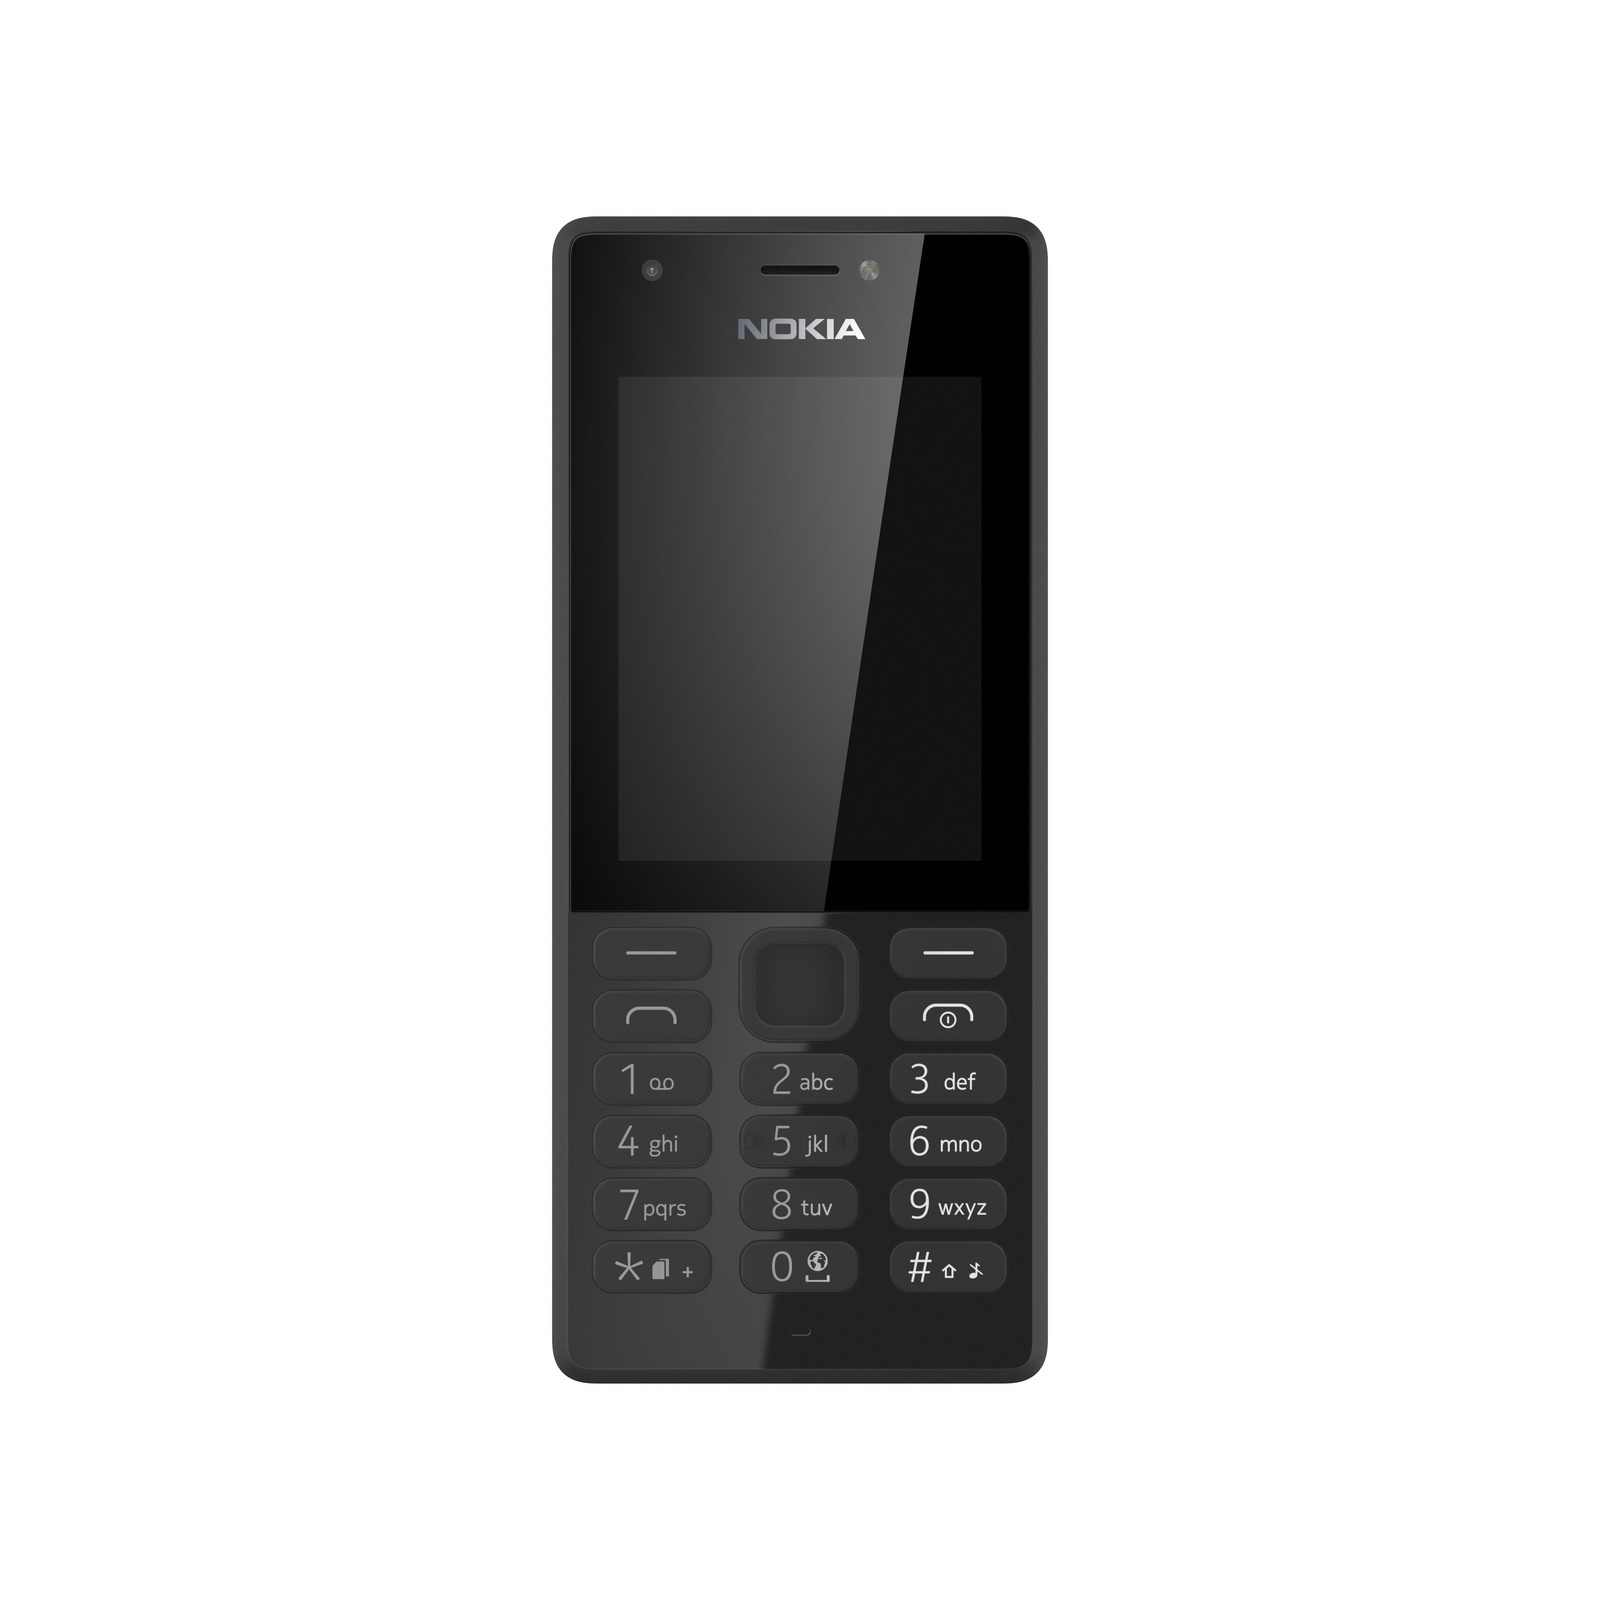 Модели телефонов нокиа кнопочные фото. Nokia 216 Dual SIM Black. Телефон Nokia 216 DS Black. Nokia 216 Dual SIM черный. Nokia 216 (RM-1187).